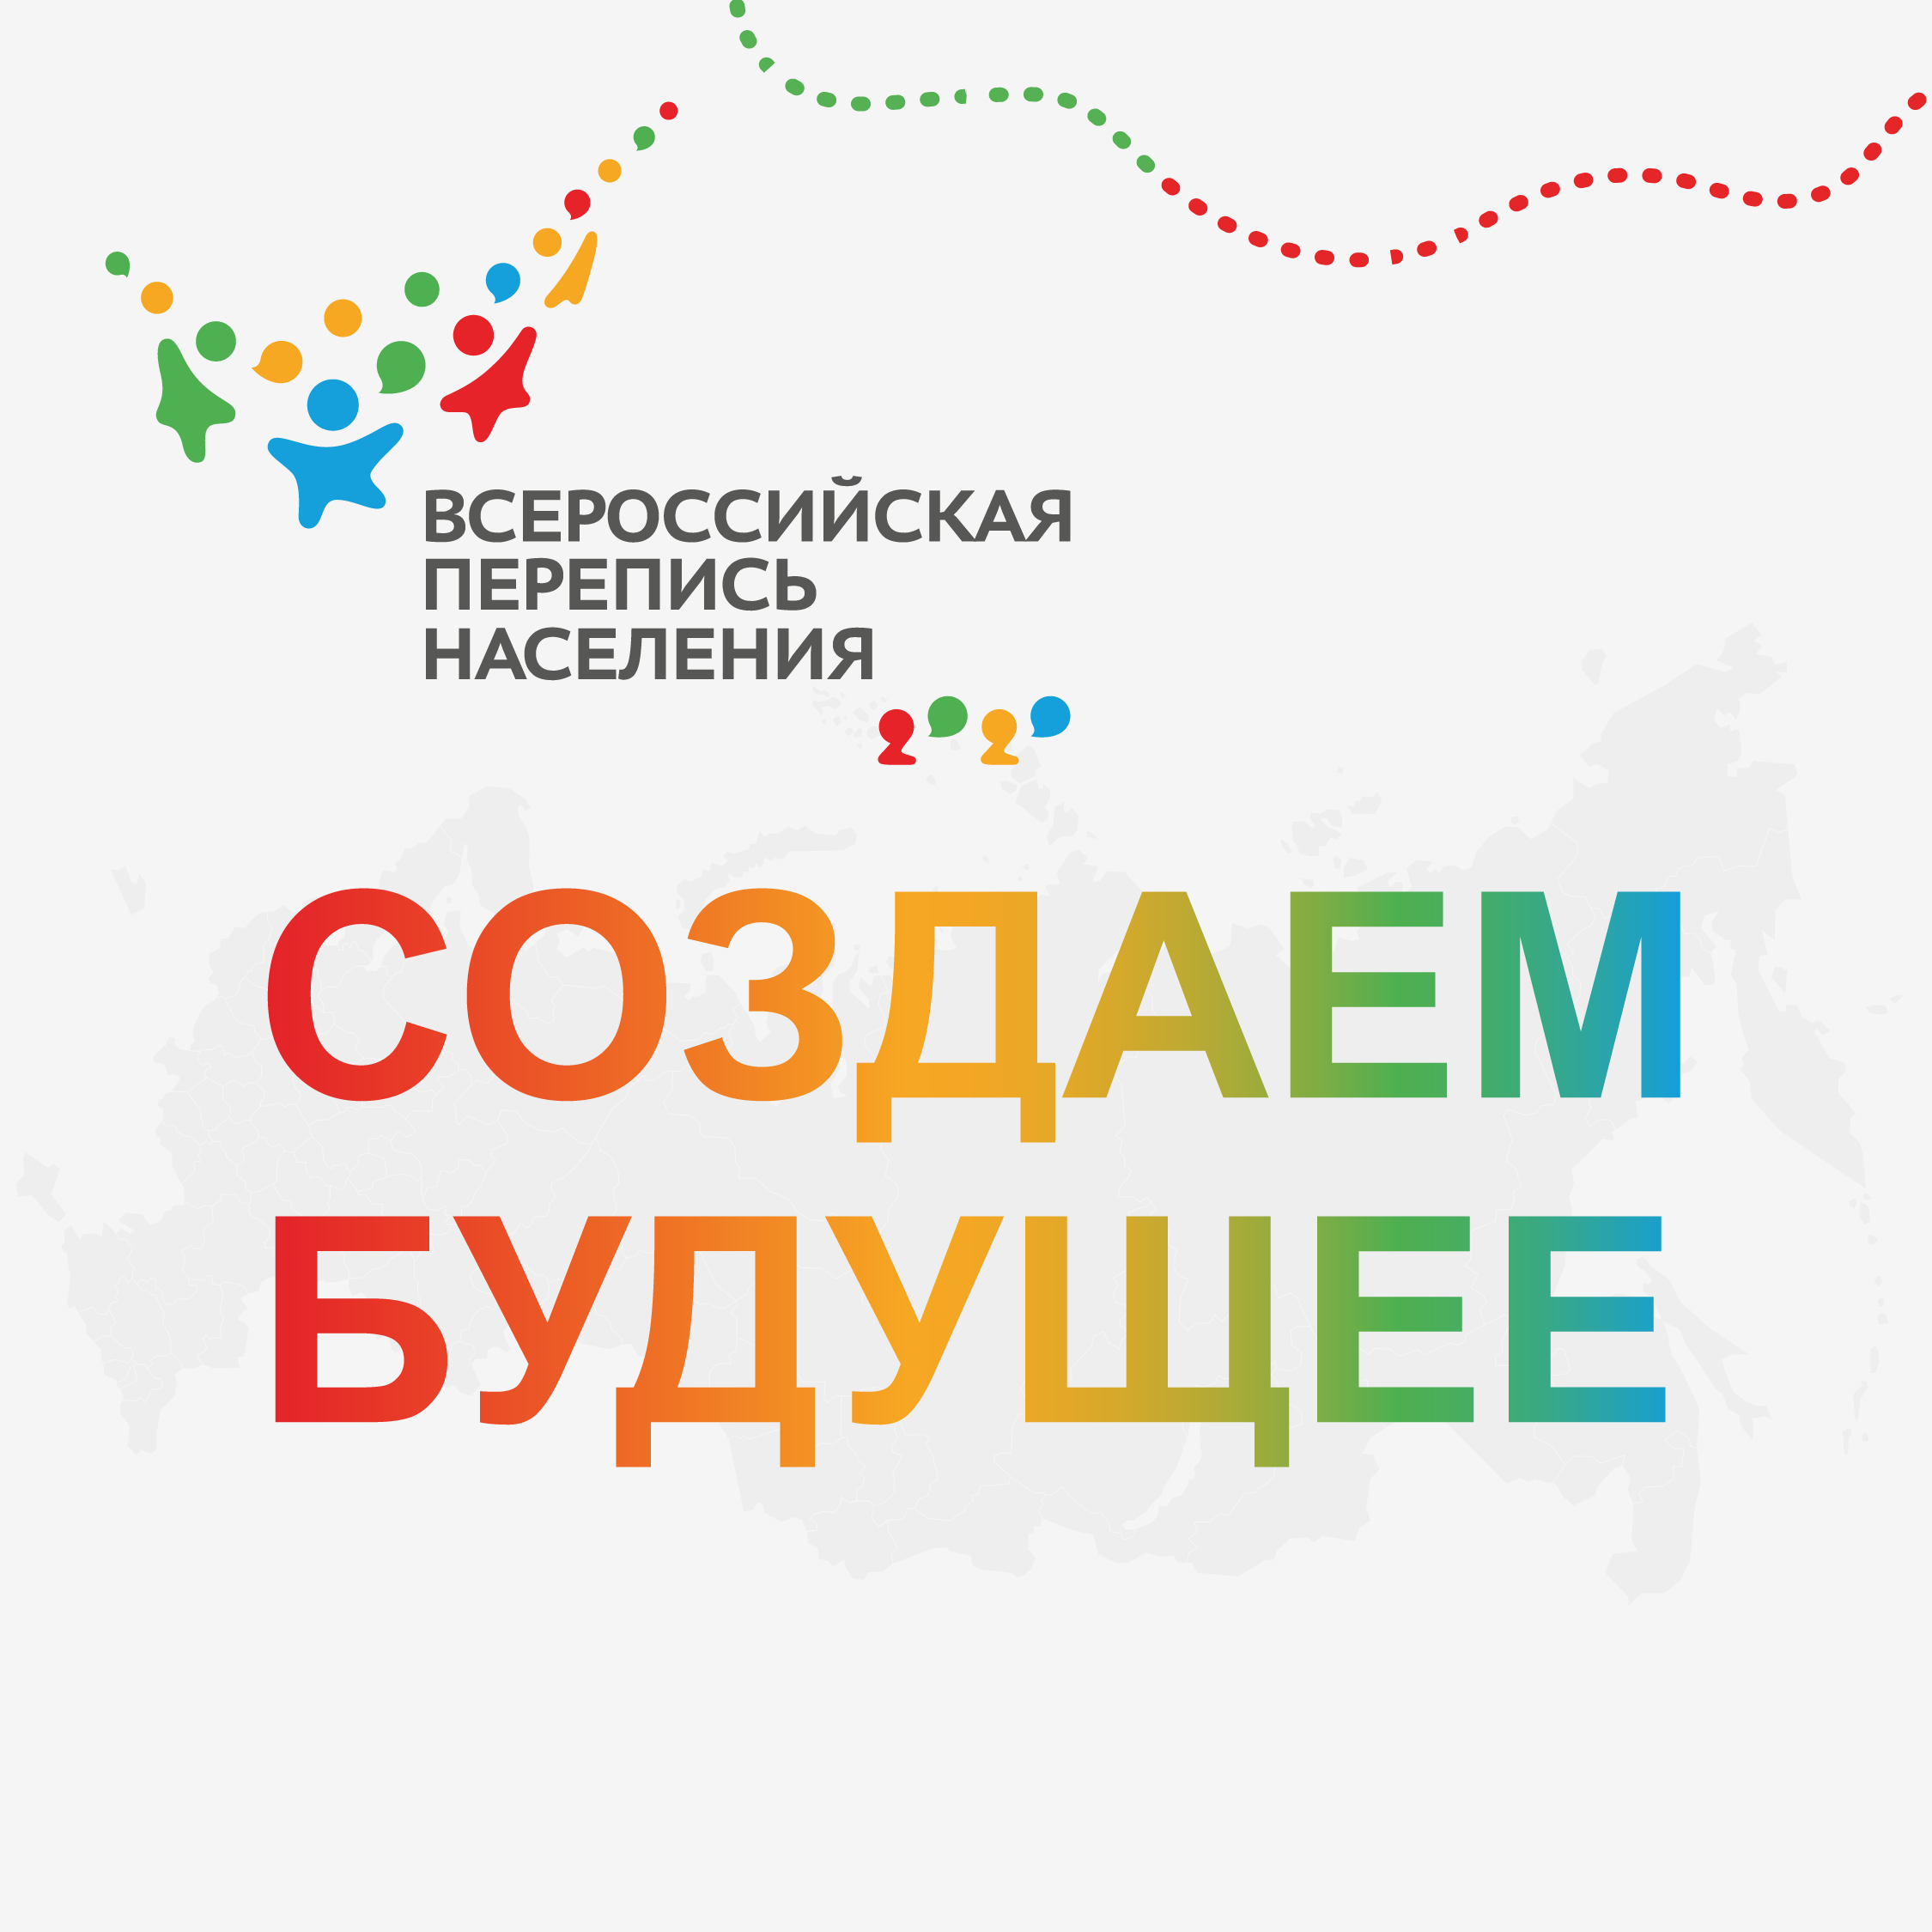 Всероссийская перепись населения (15 октября — 14 ноября)